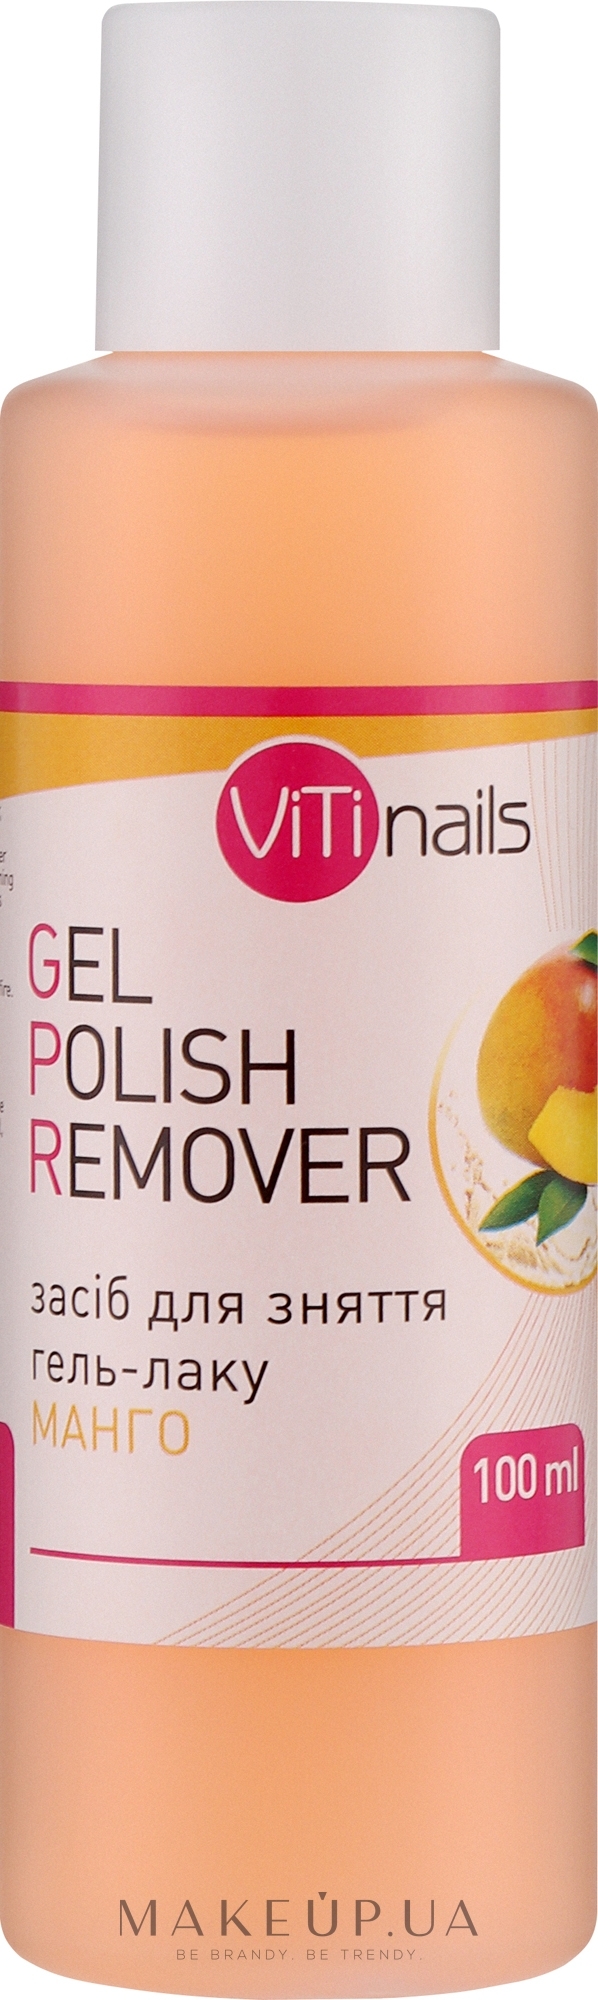 Жидкость для снятия гель-лака с экстрактом манго - ViTinails Gel Polish Remover — фото 100ml